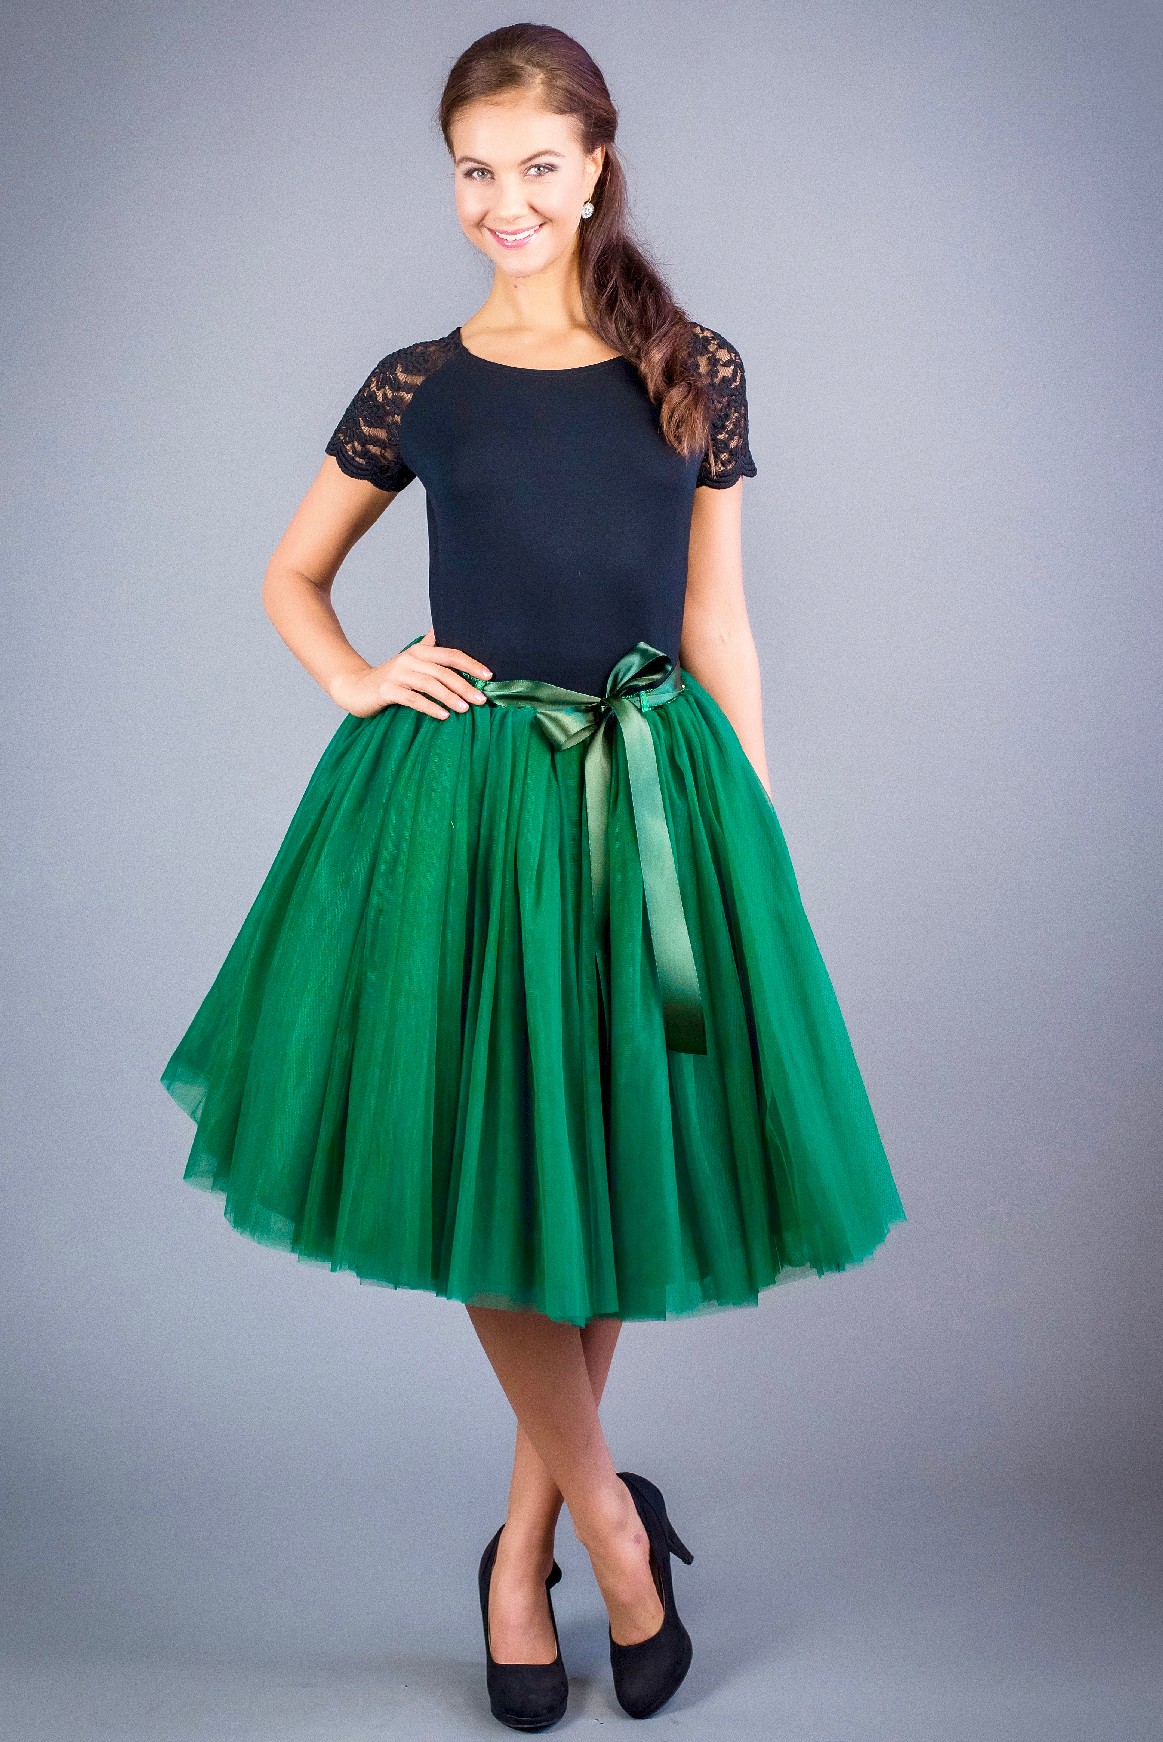 Tylová TUTU sukně smaragdová pod kolená - 60 cm